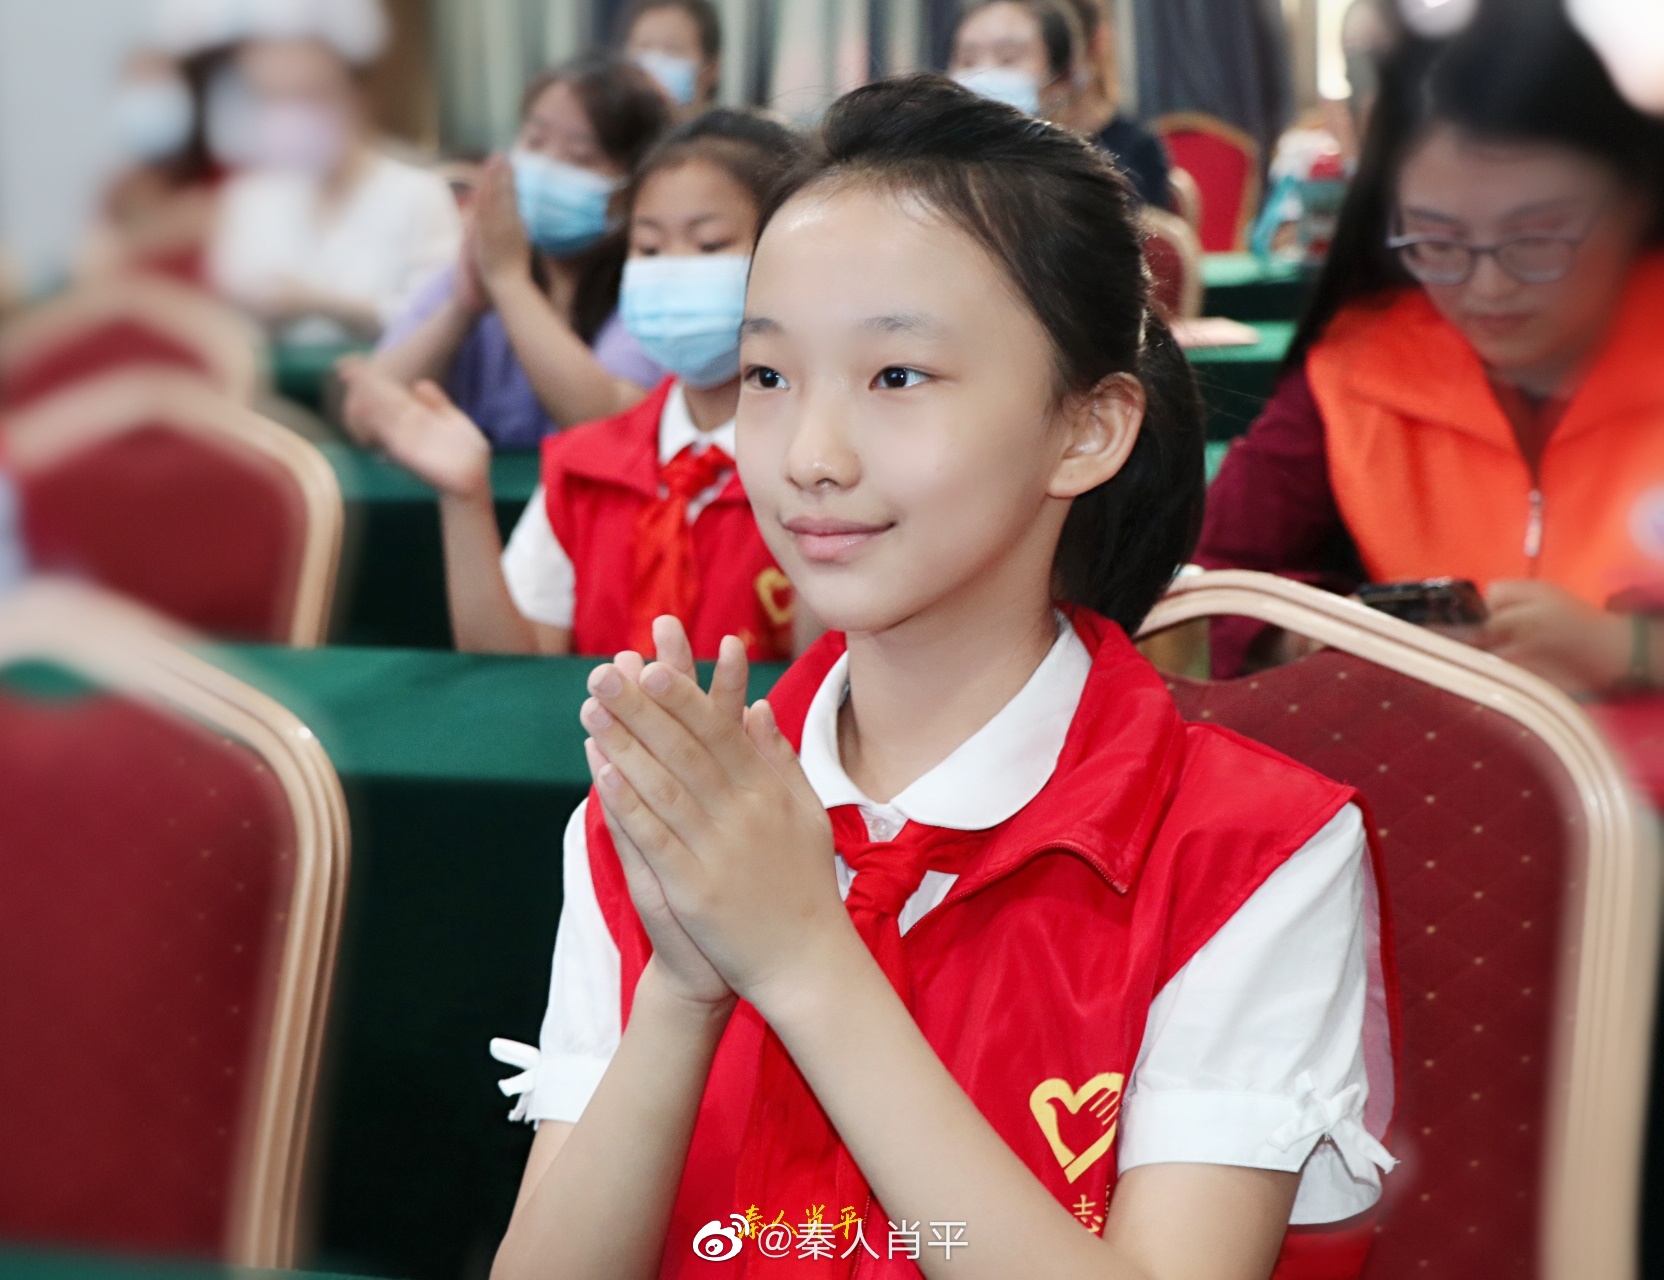 系着红领巾的小学生们-蓝牛仔影像-中国原创广告影像素材